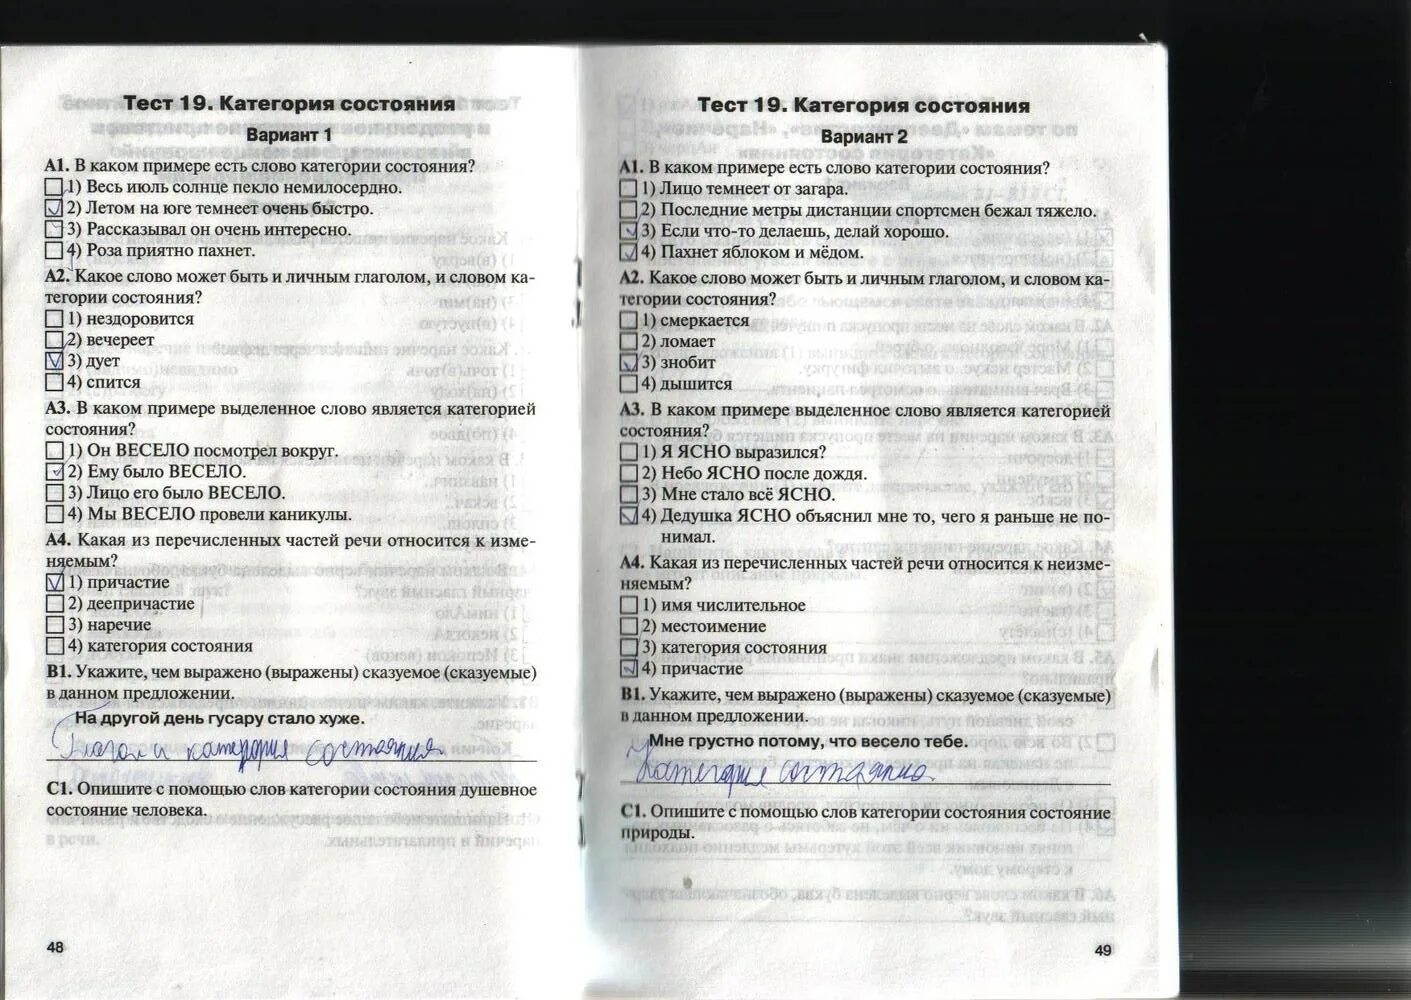 Категория состояния тест. Тест по русскому языку 7 класс категория состояния. Тест 19 категория состояния. Тест категория состояния 7 класс с ответами.